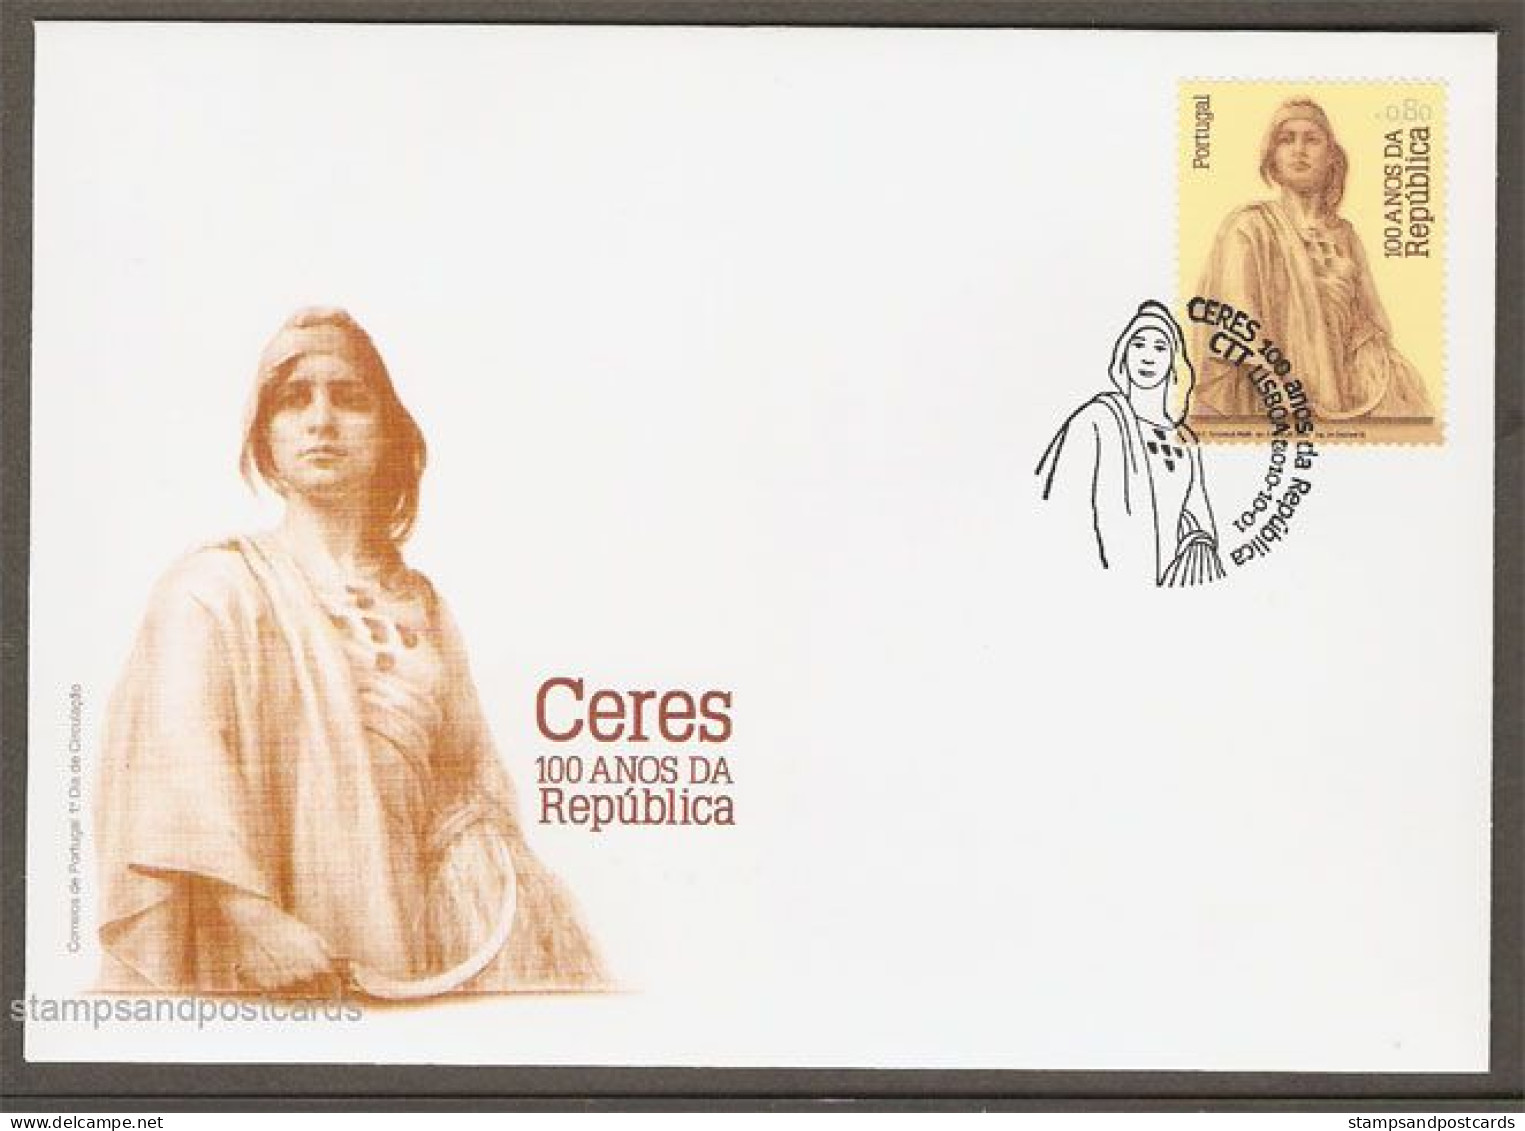 Portugal 2010 Centenaire Republique Ceres Gravé Taille Douce Brochure + Timbre + FDC Republic Centennial Engraved Stamp - Lettres & Documents